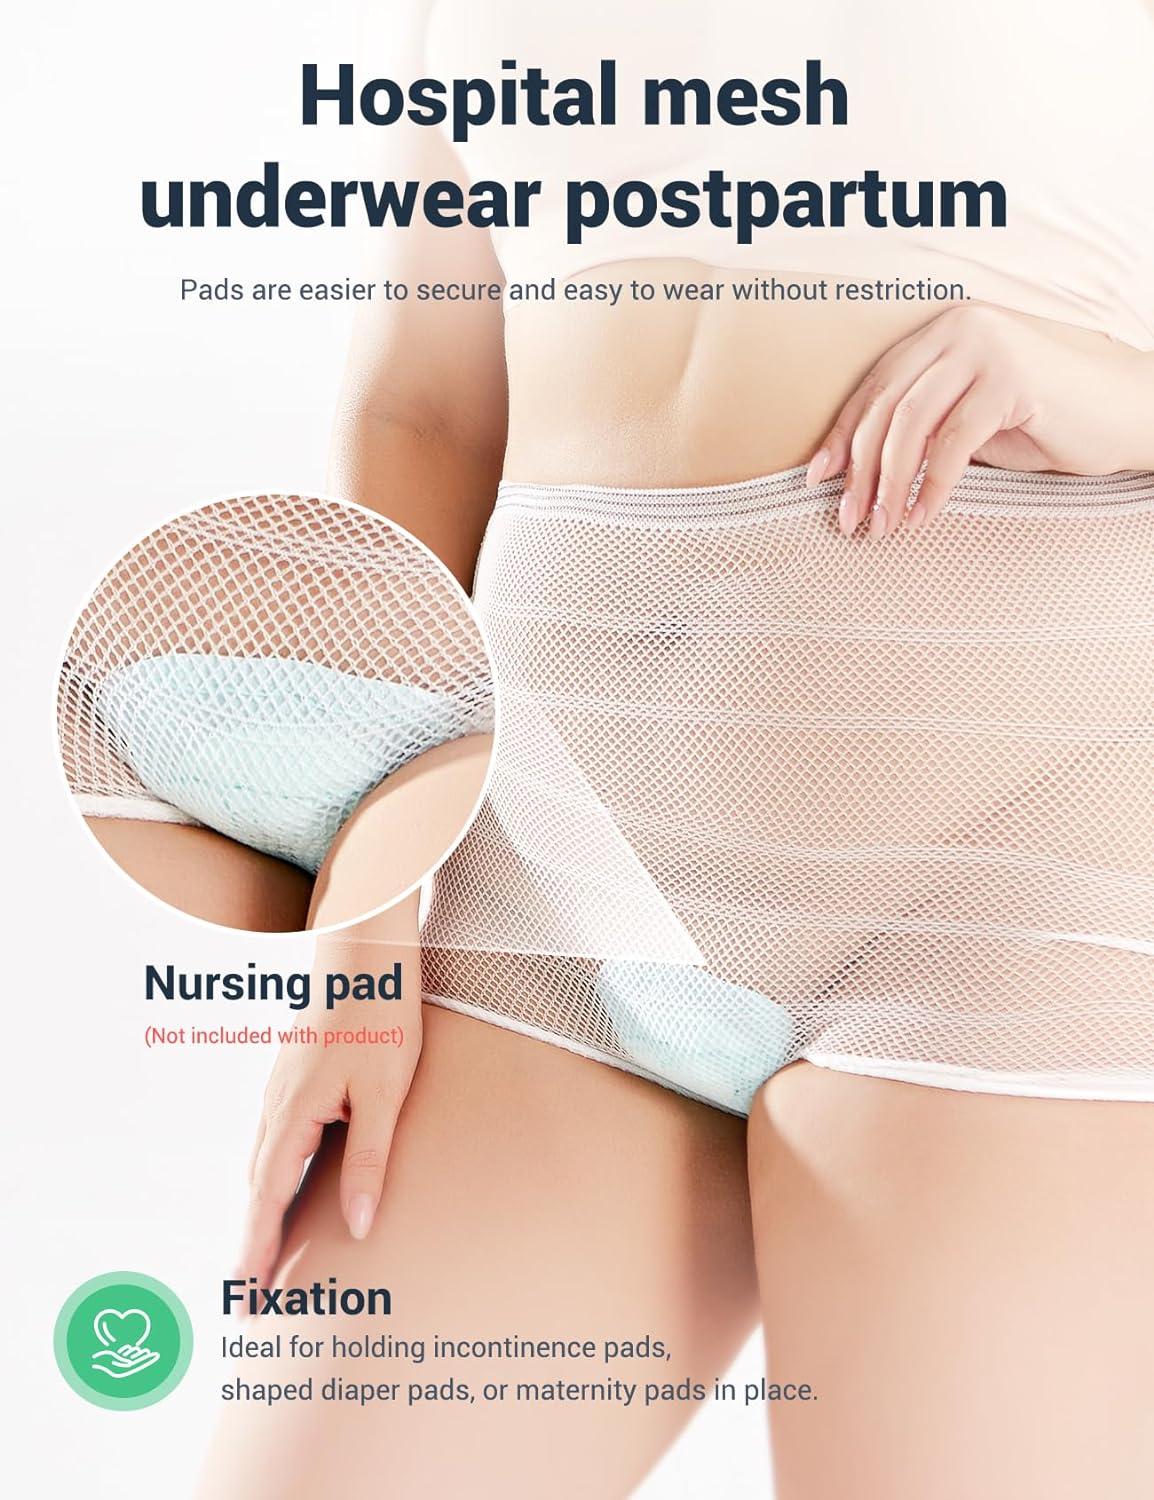 Buy 4 Pack Mesh Panties Postpartum Hospital Mesh Underwear